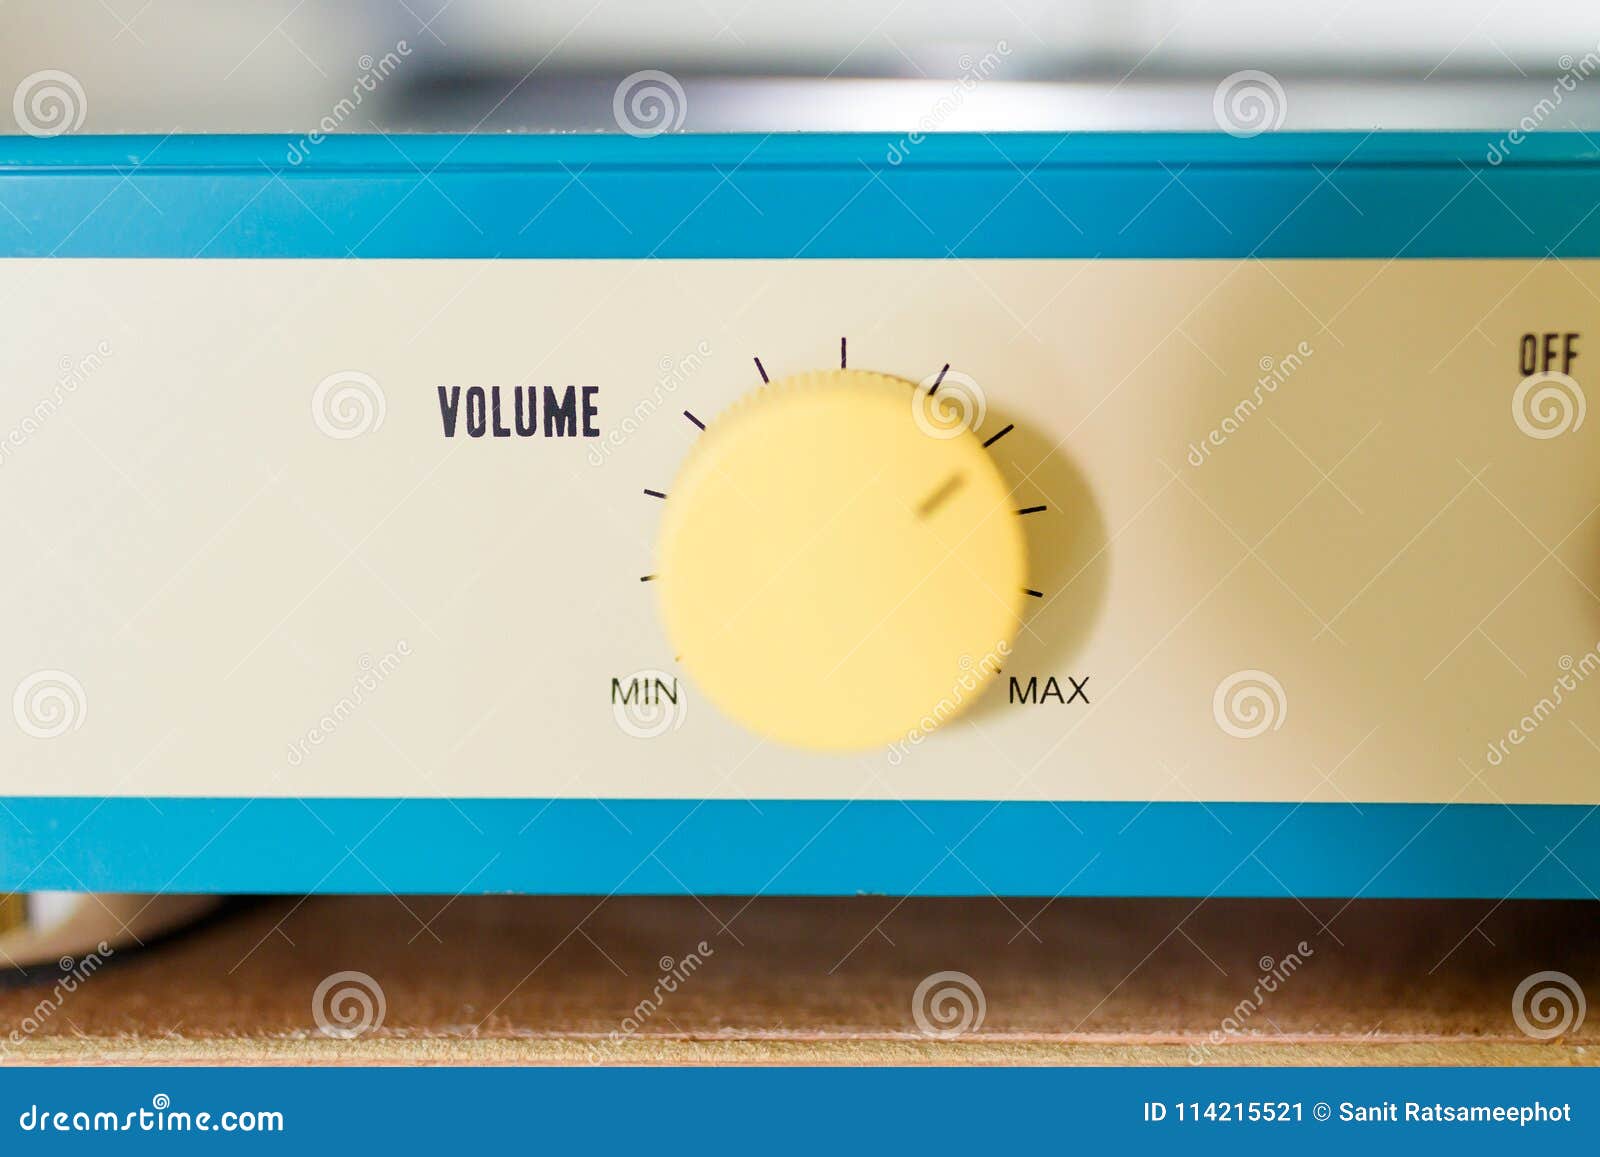 yellow volume button.